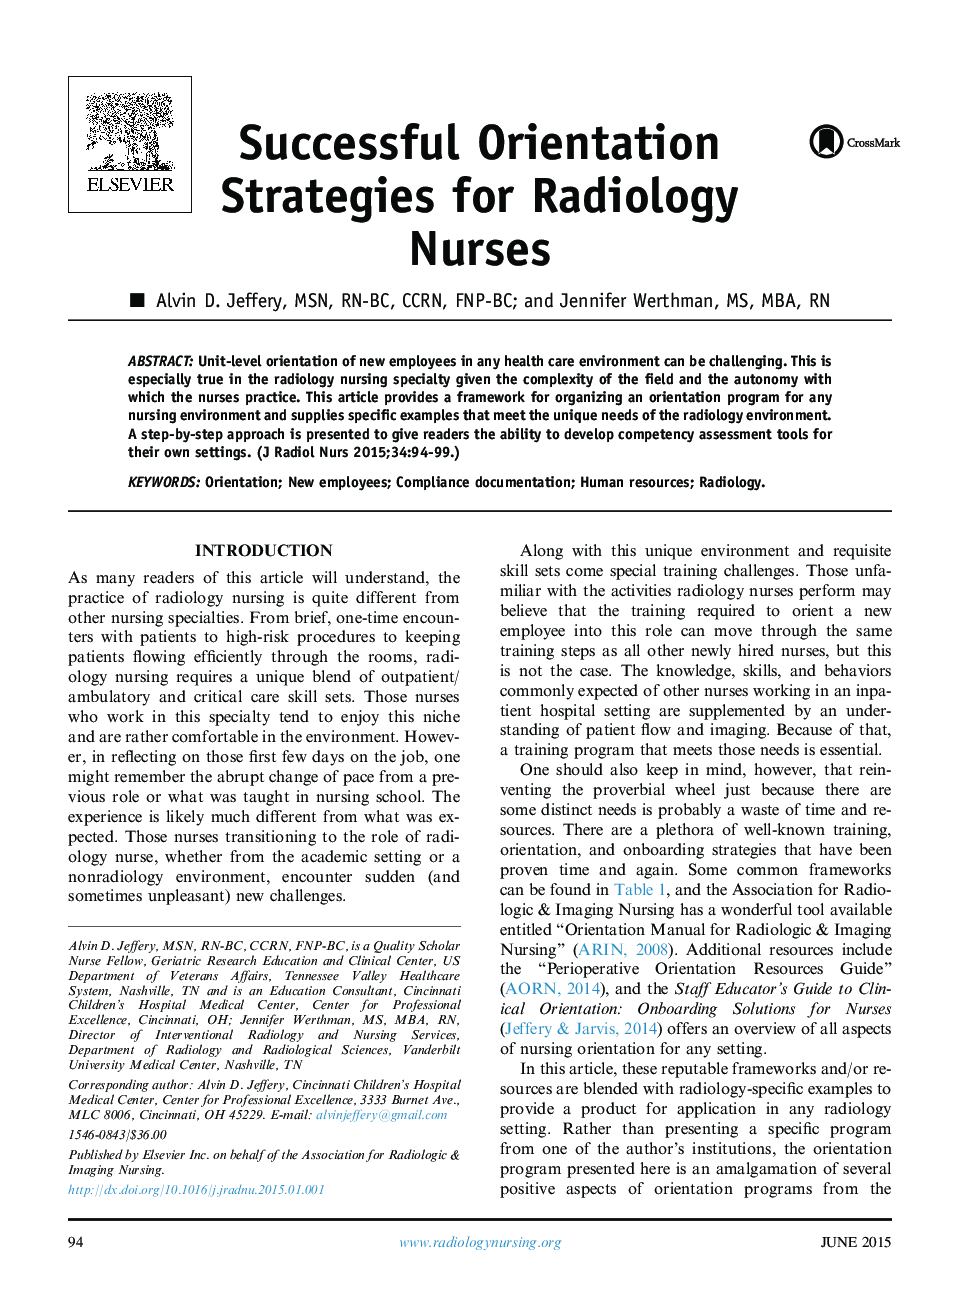 راهبردهای جهت موفق برای پرستاران رادیولوژی